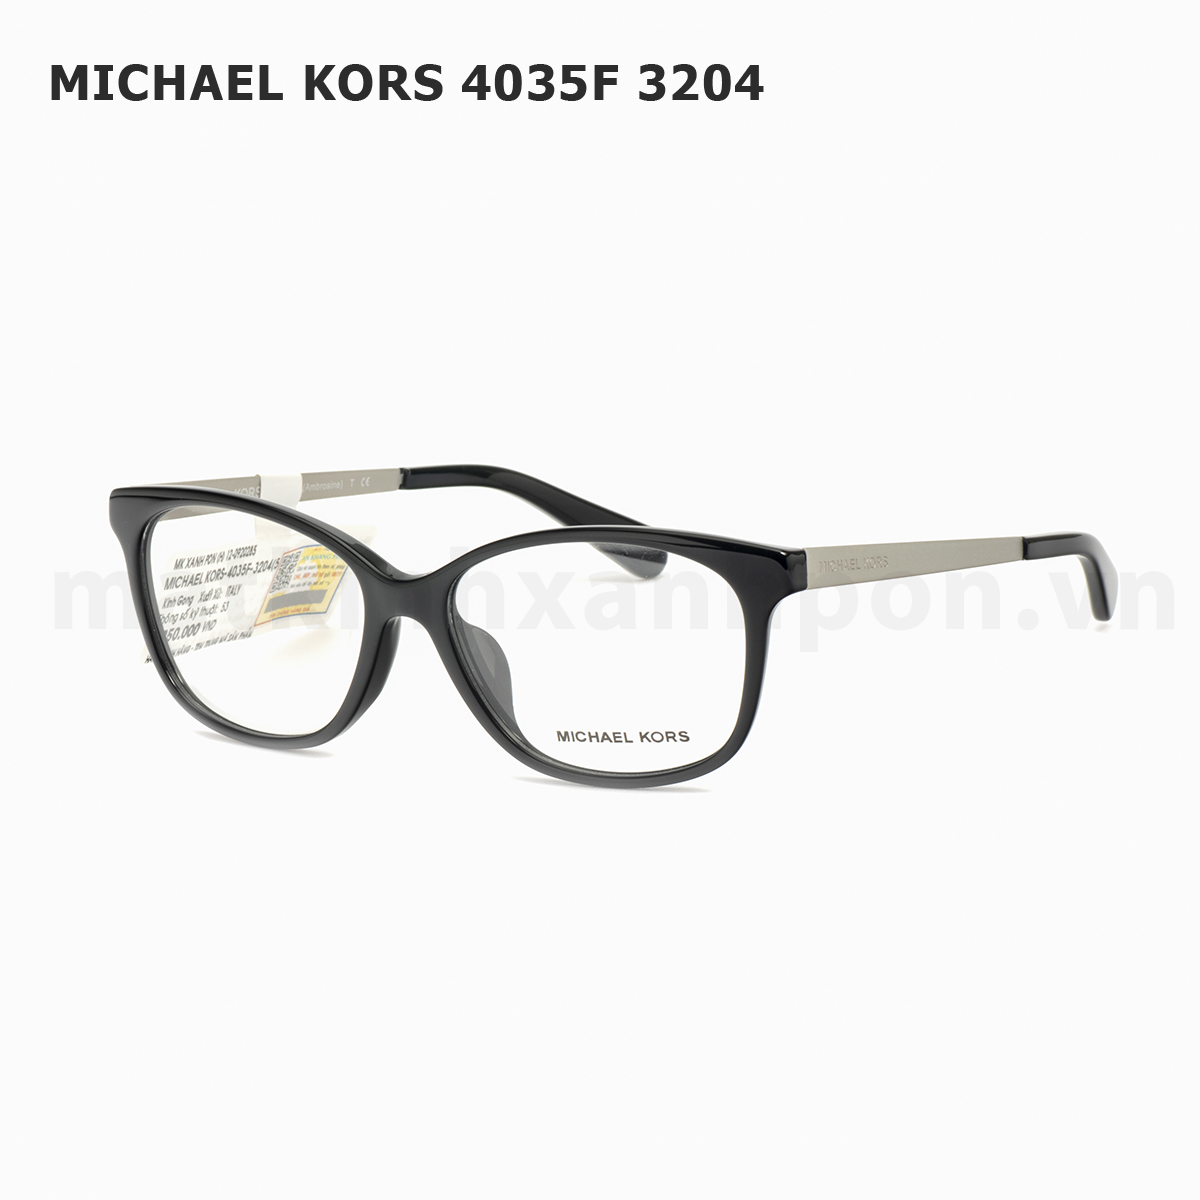 Michael kors 4035F 3204